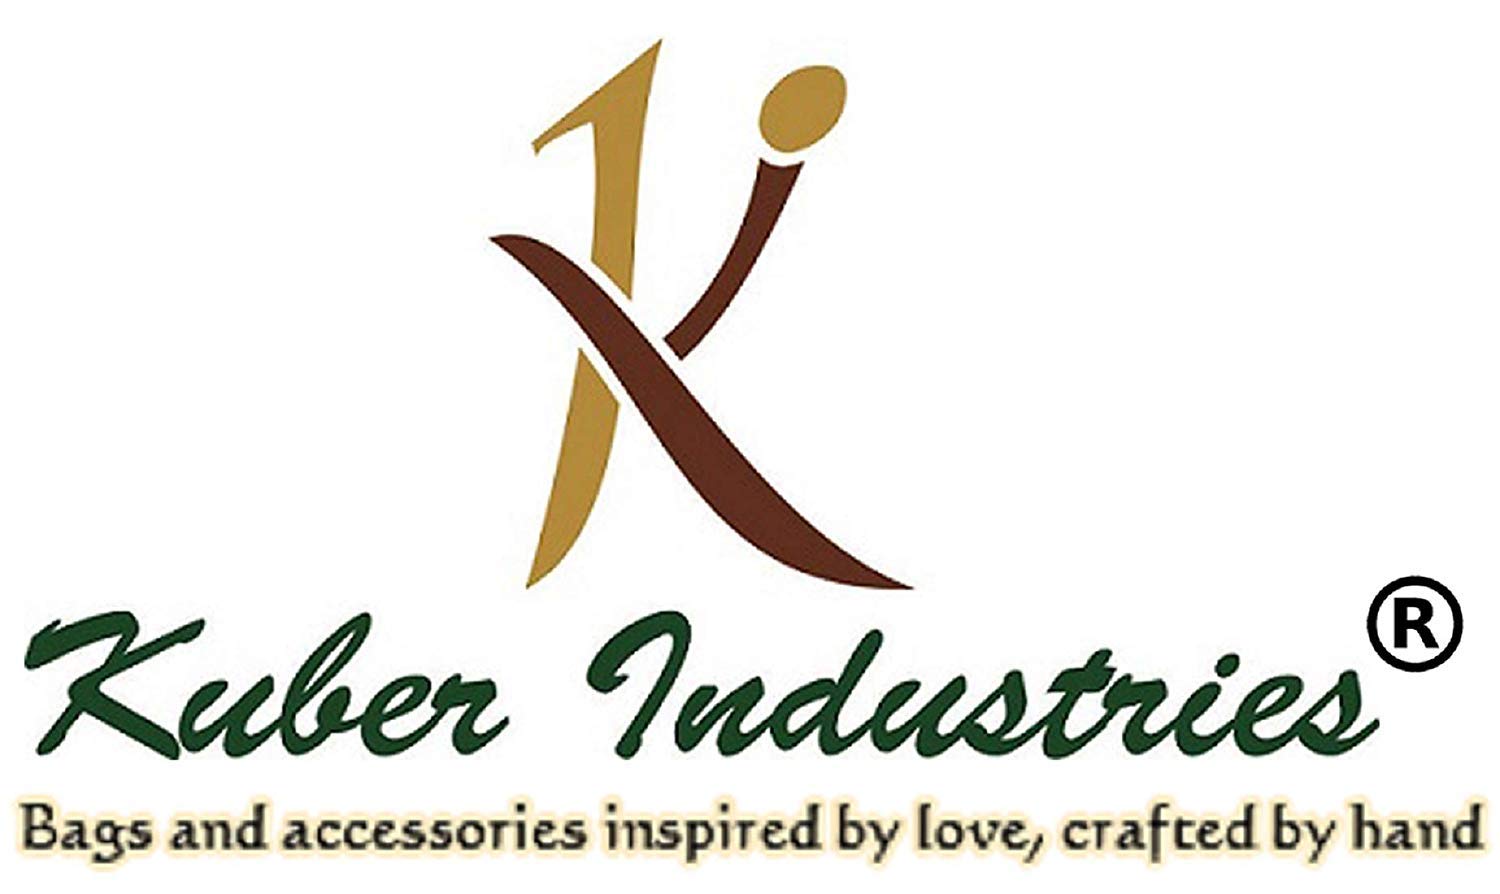 Kuber Industries Rectangular Underbed Storage Bag, Storage Organizer, Blanket Cover Set of 2 (Beige)